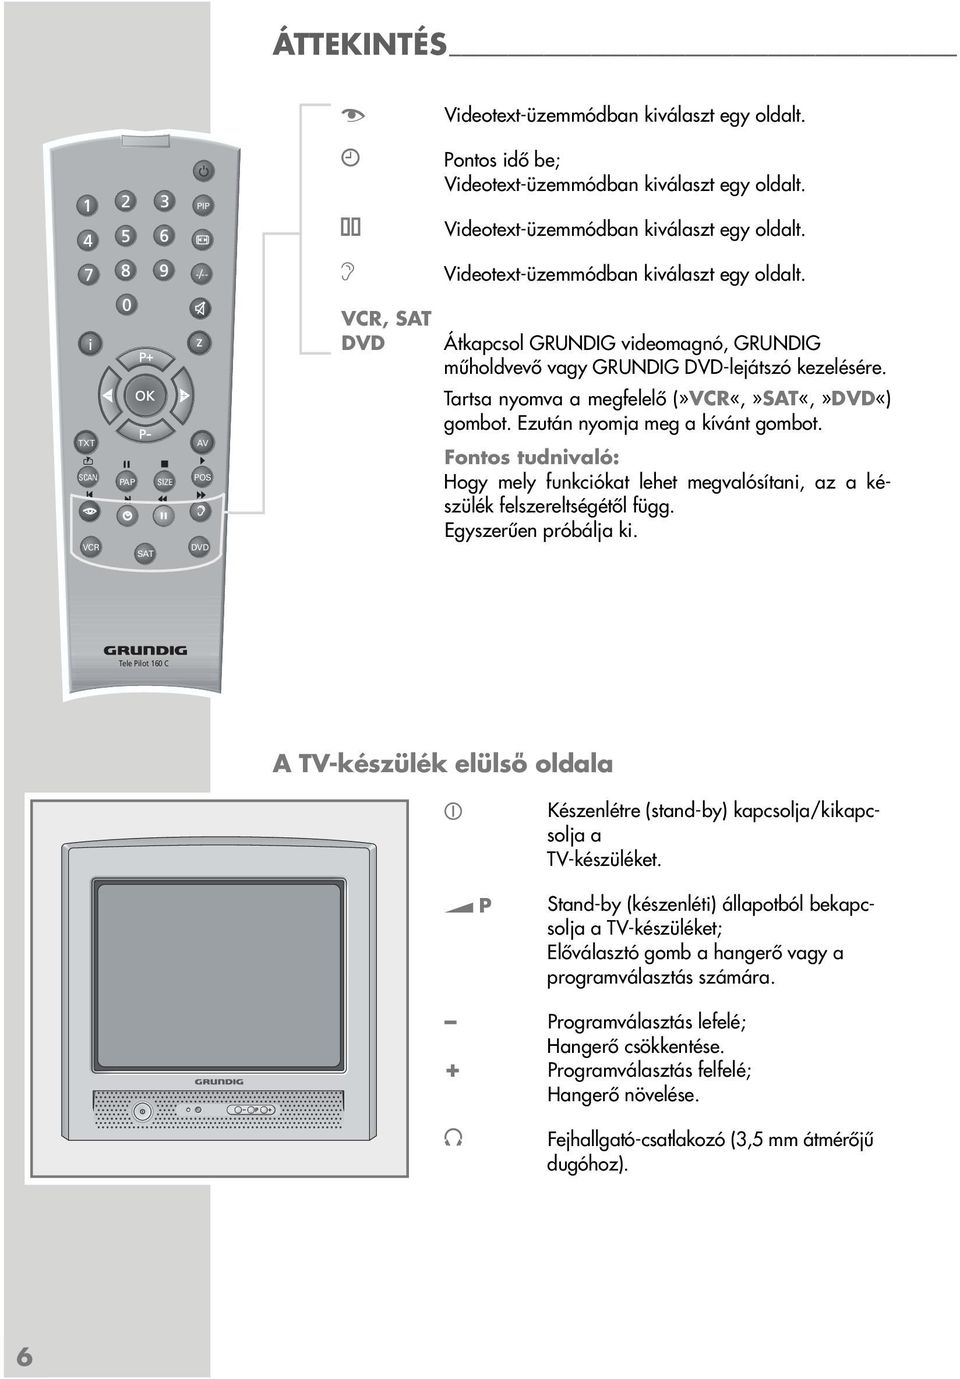 TXT SCAN VCR PAP SAT SIZE AV POS d DVD Hogy mely funkciókat lehet megvalósítani, az a készülék felszereltségétől függ. Egyszerűen próbálja ki.